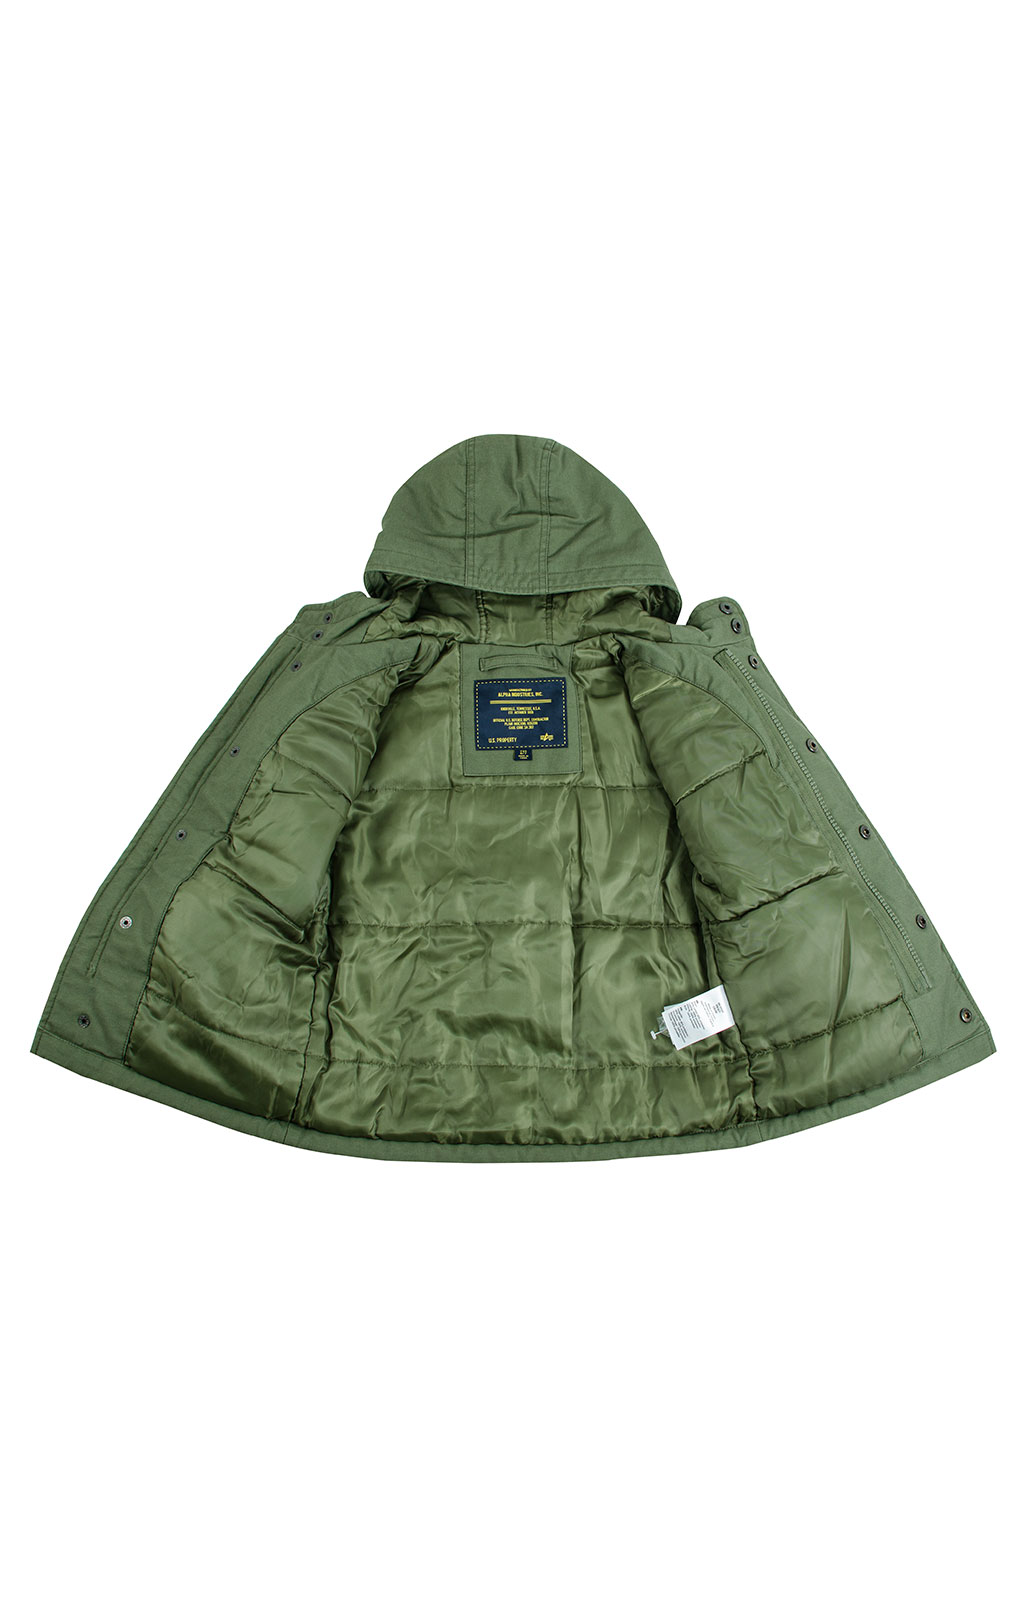 Детская куртка ALPHA INDUSTRIES M-65 NOAH M-65 olive 